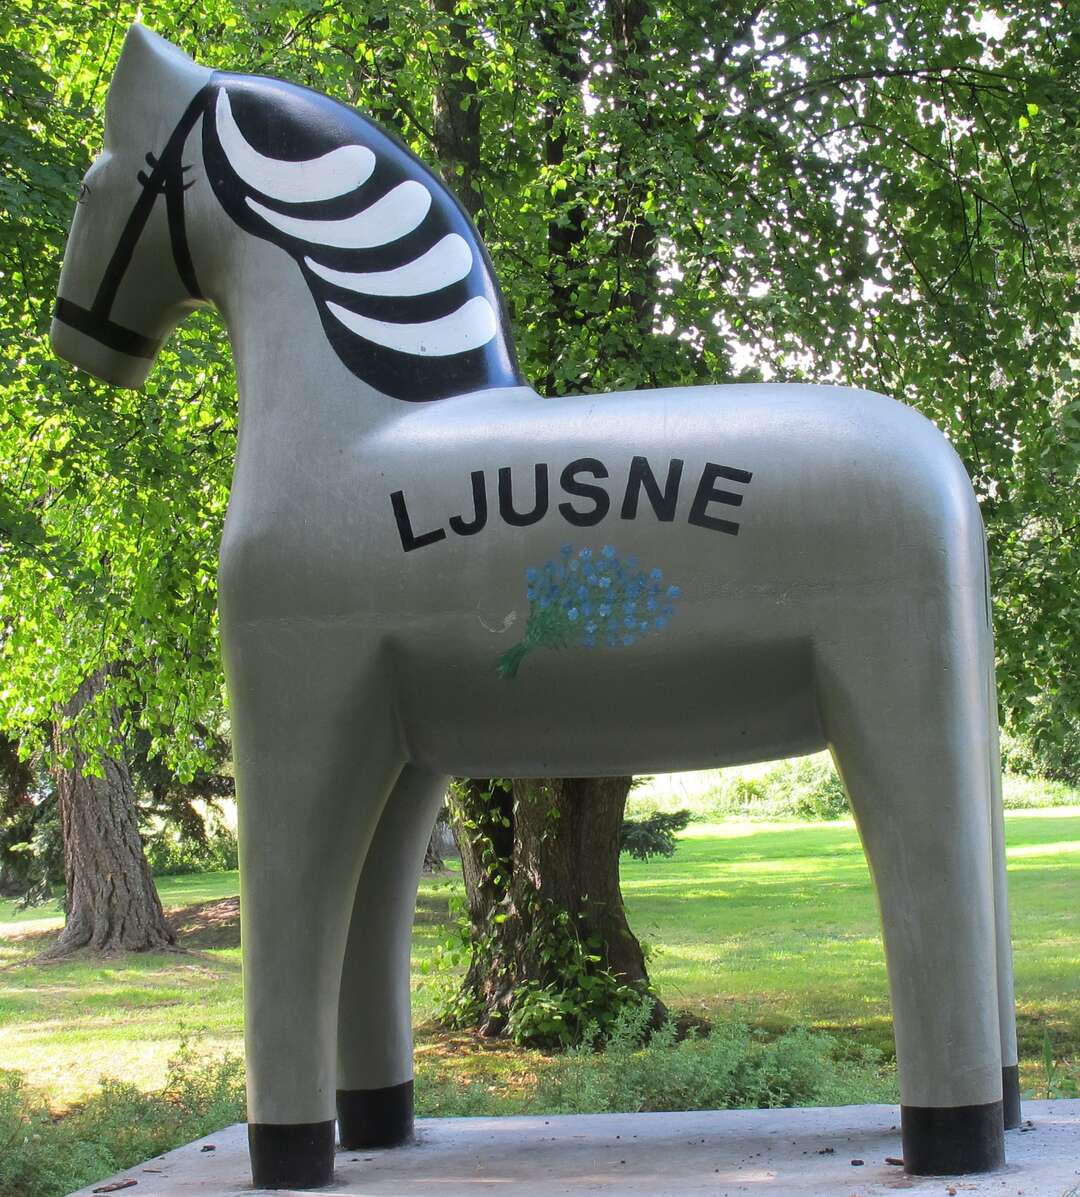 Ljusnehästen från Gunnar Prefab är 250 cm hög och 195 cm lång.